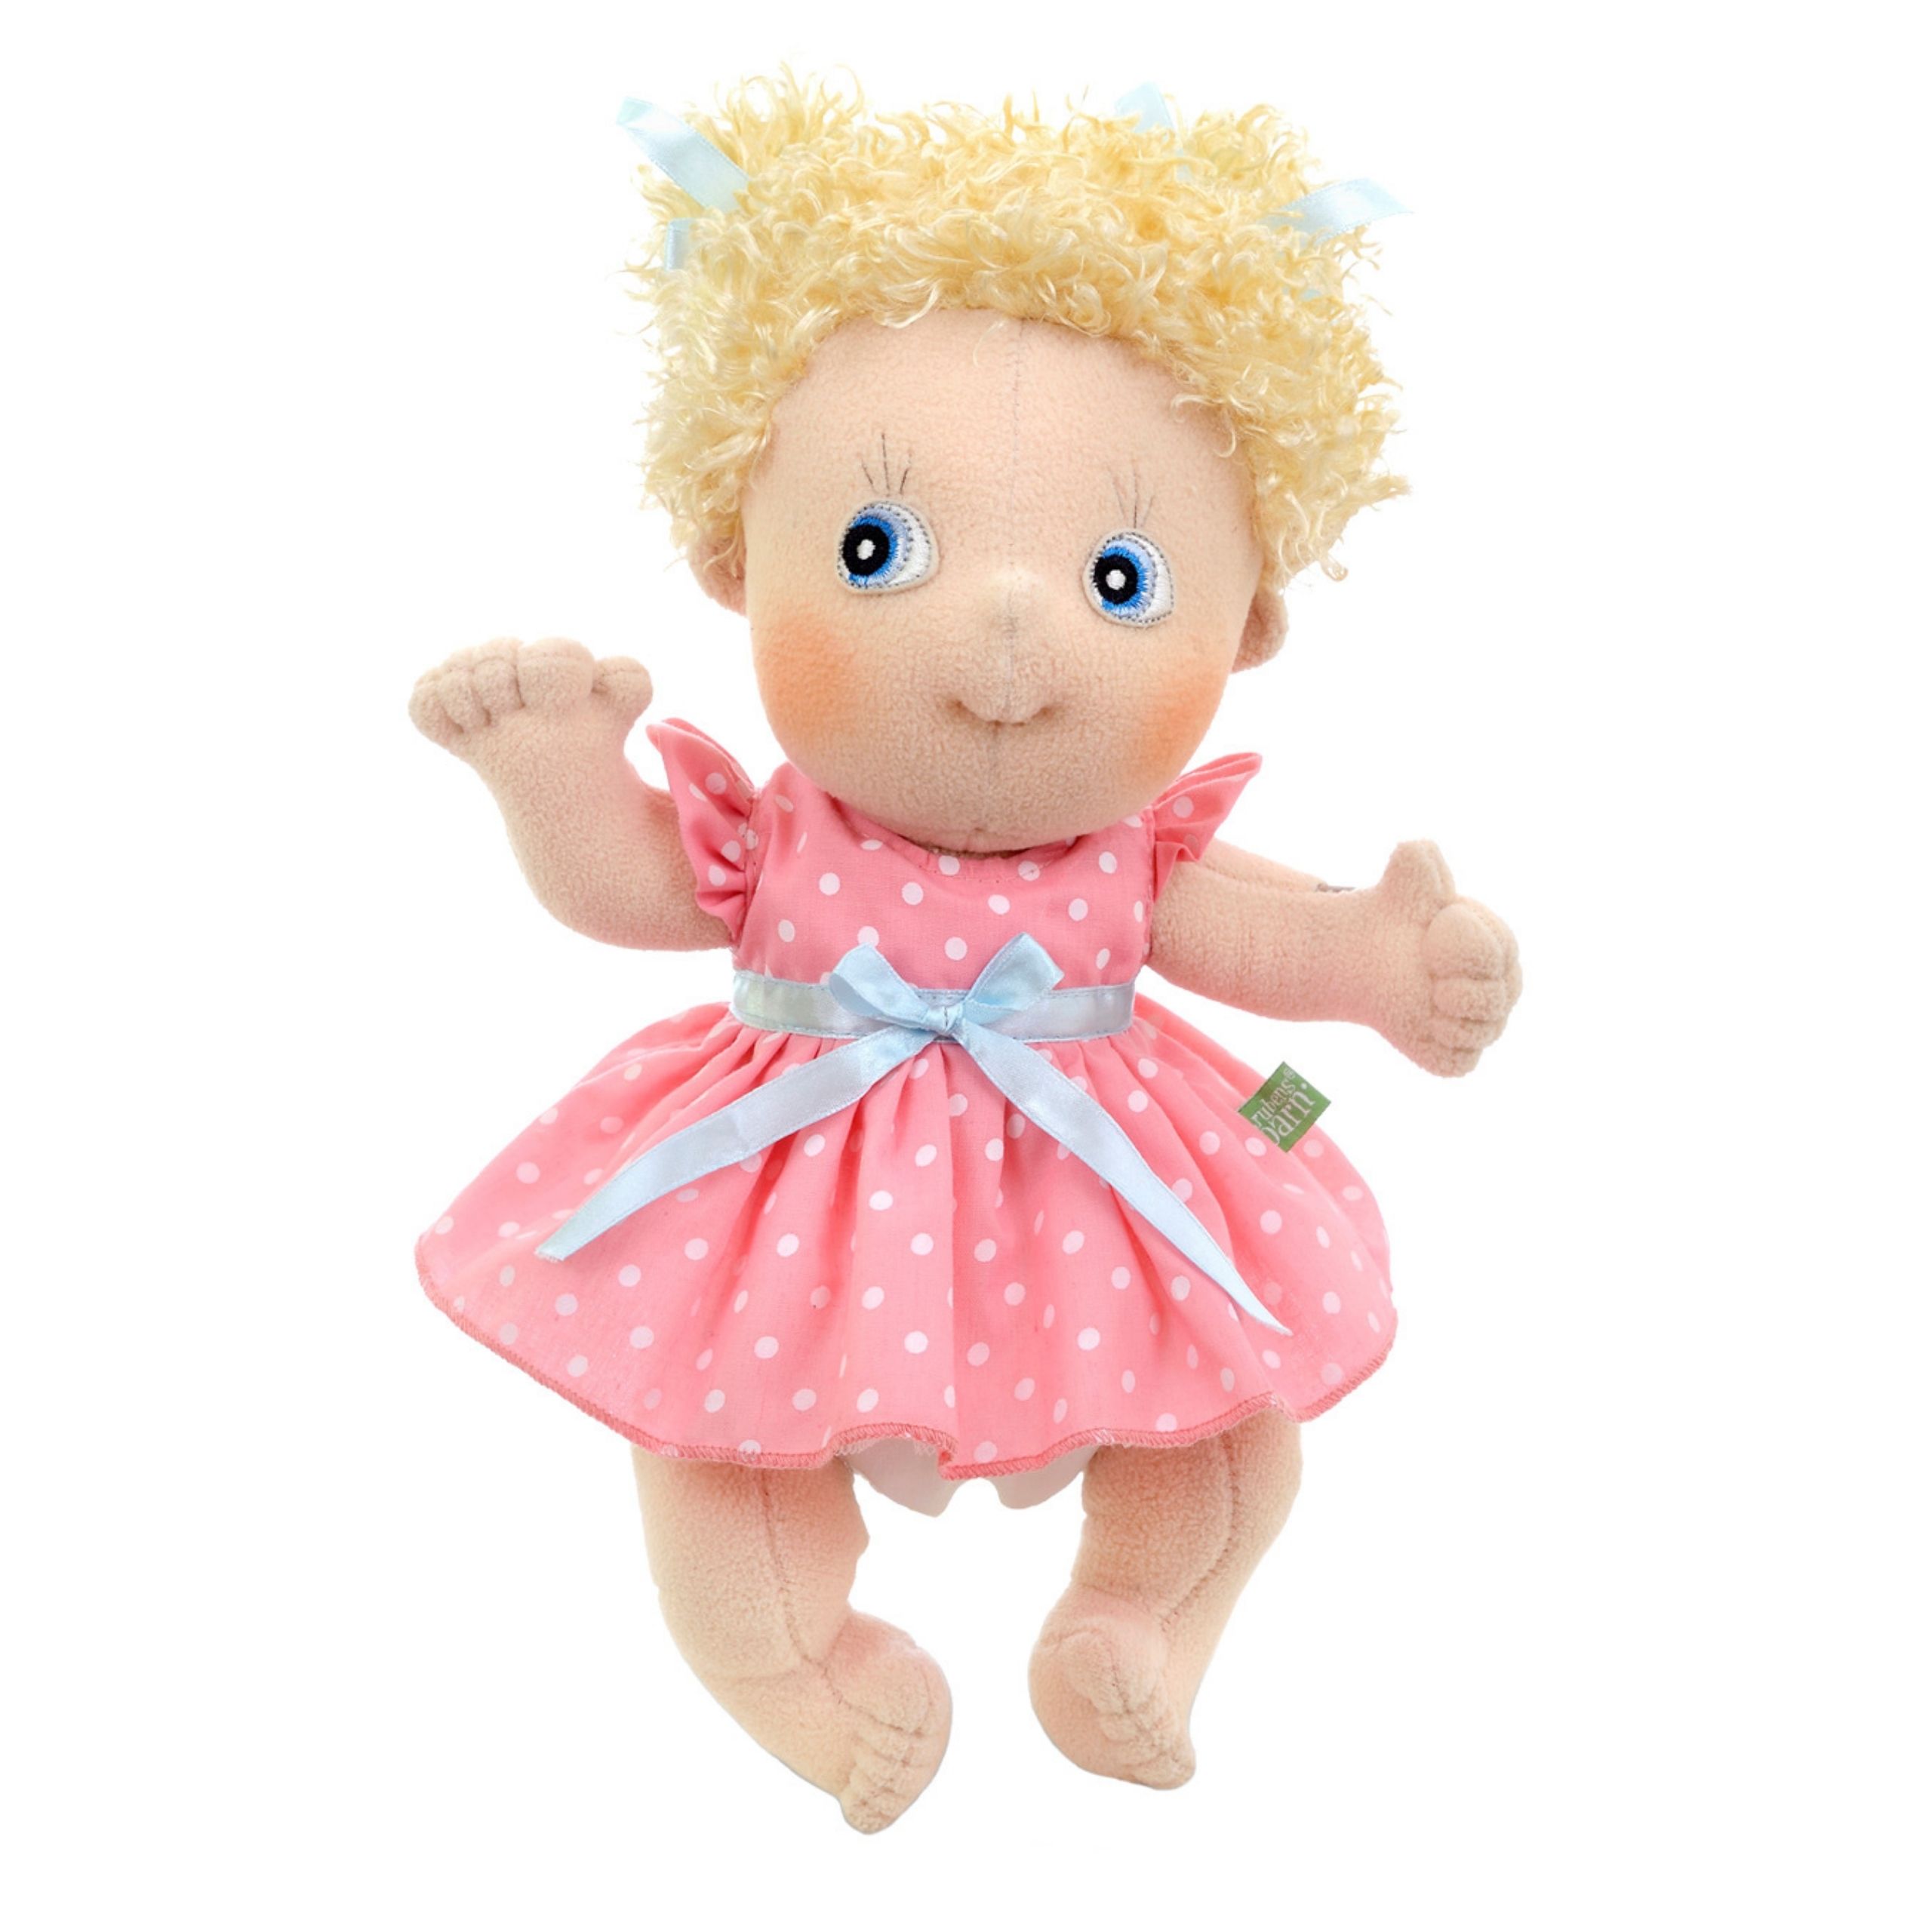 Dolls rubens barn soft doll emelie cutie classic